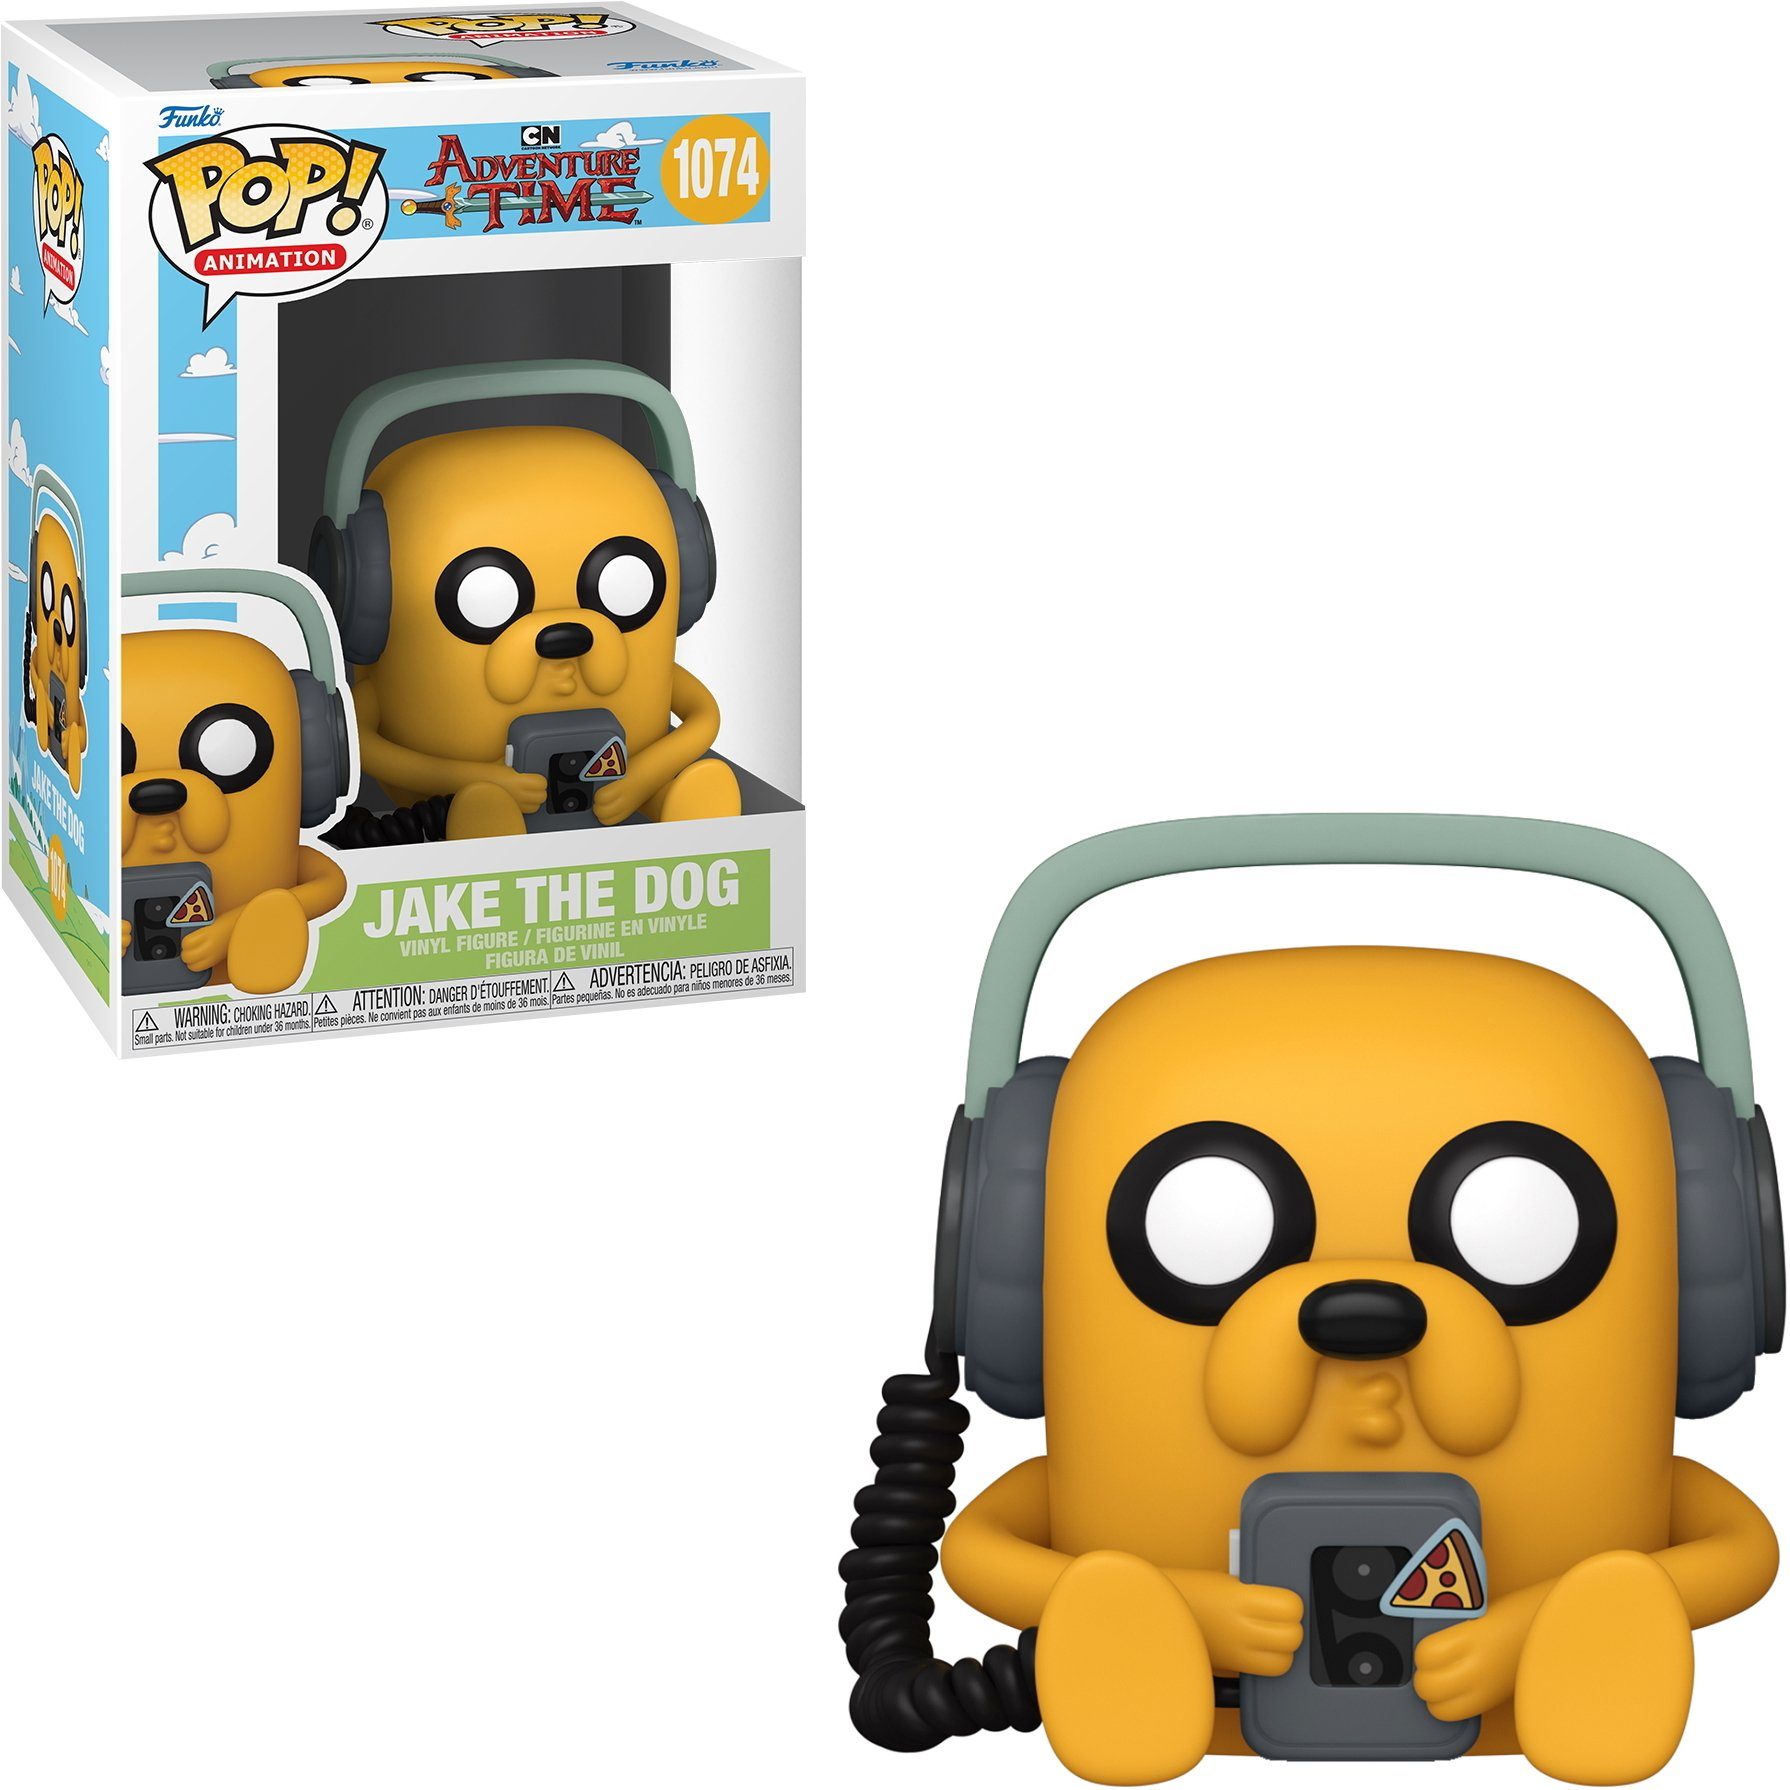 Funko Spielfigur Adventure Time - Jake The Dog 1074 Pop!